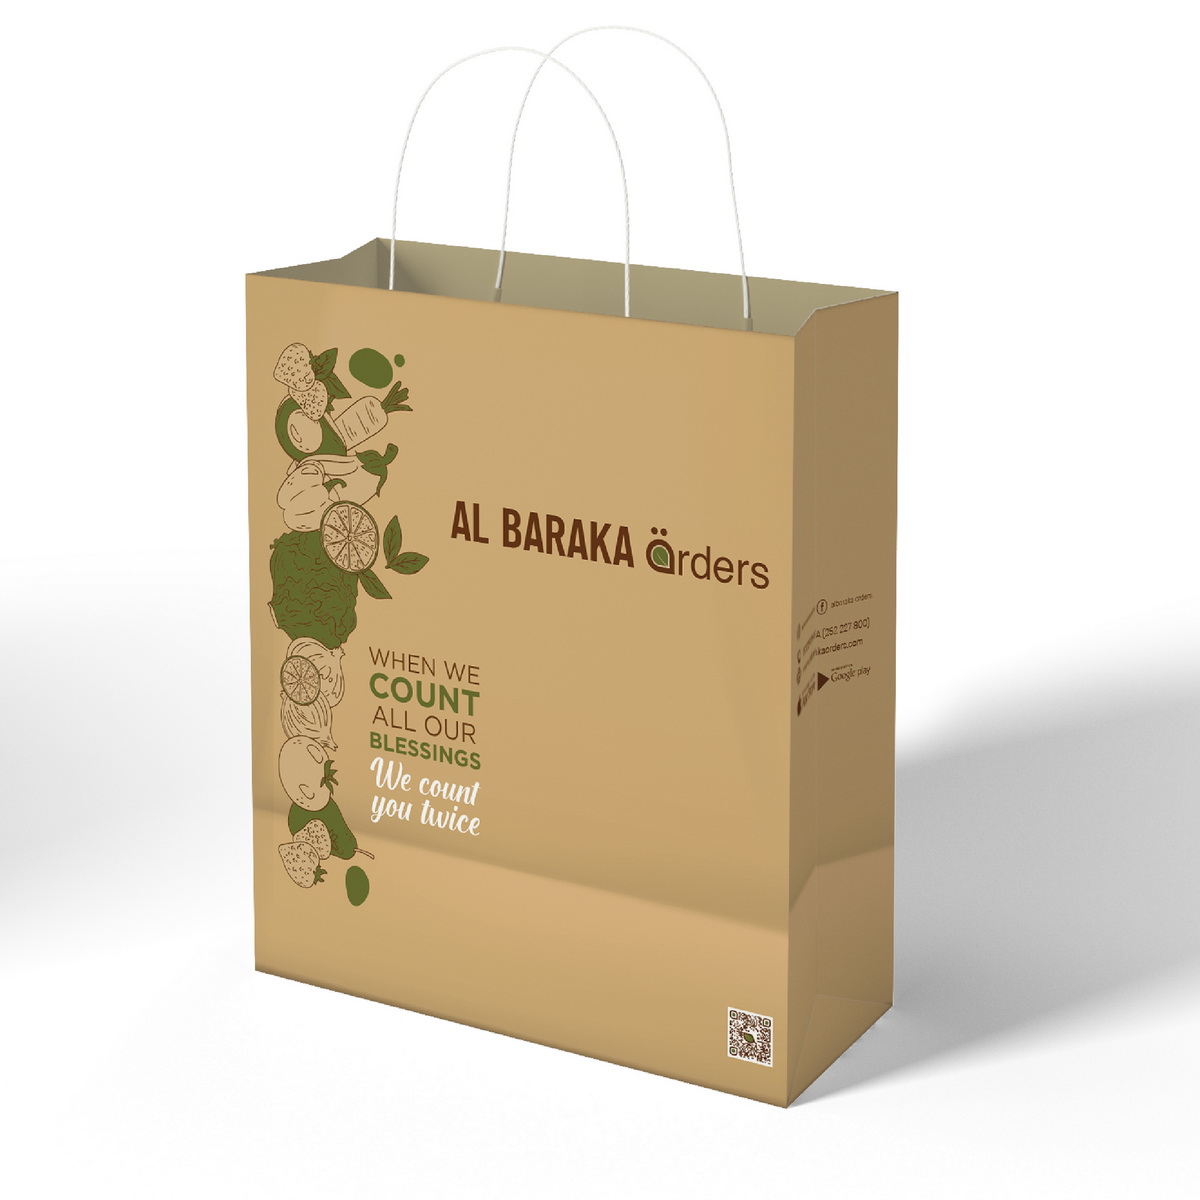 bag deliver designs al baraka orders abu dhabi